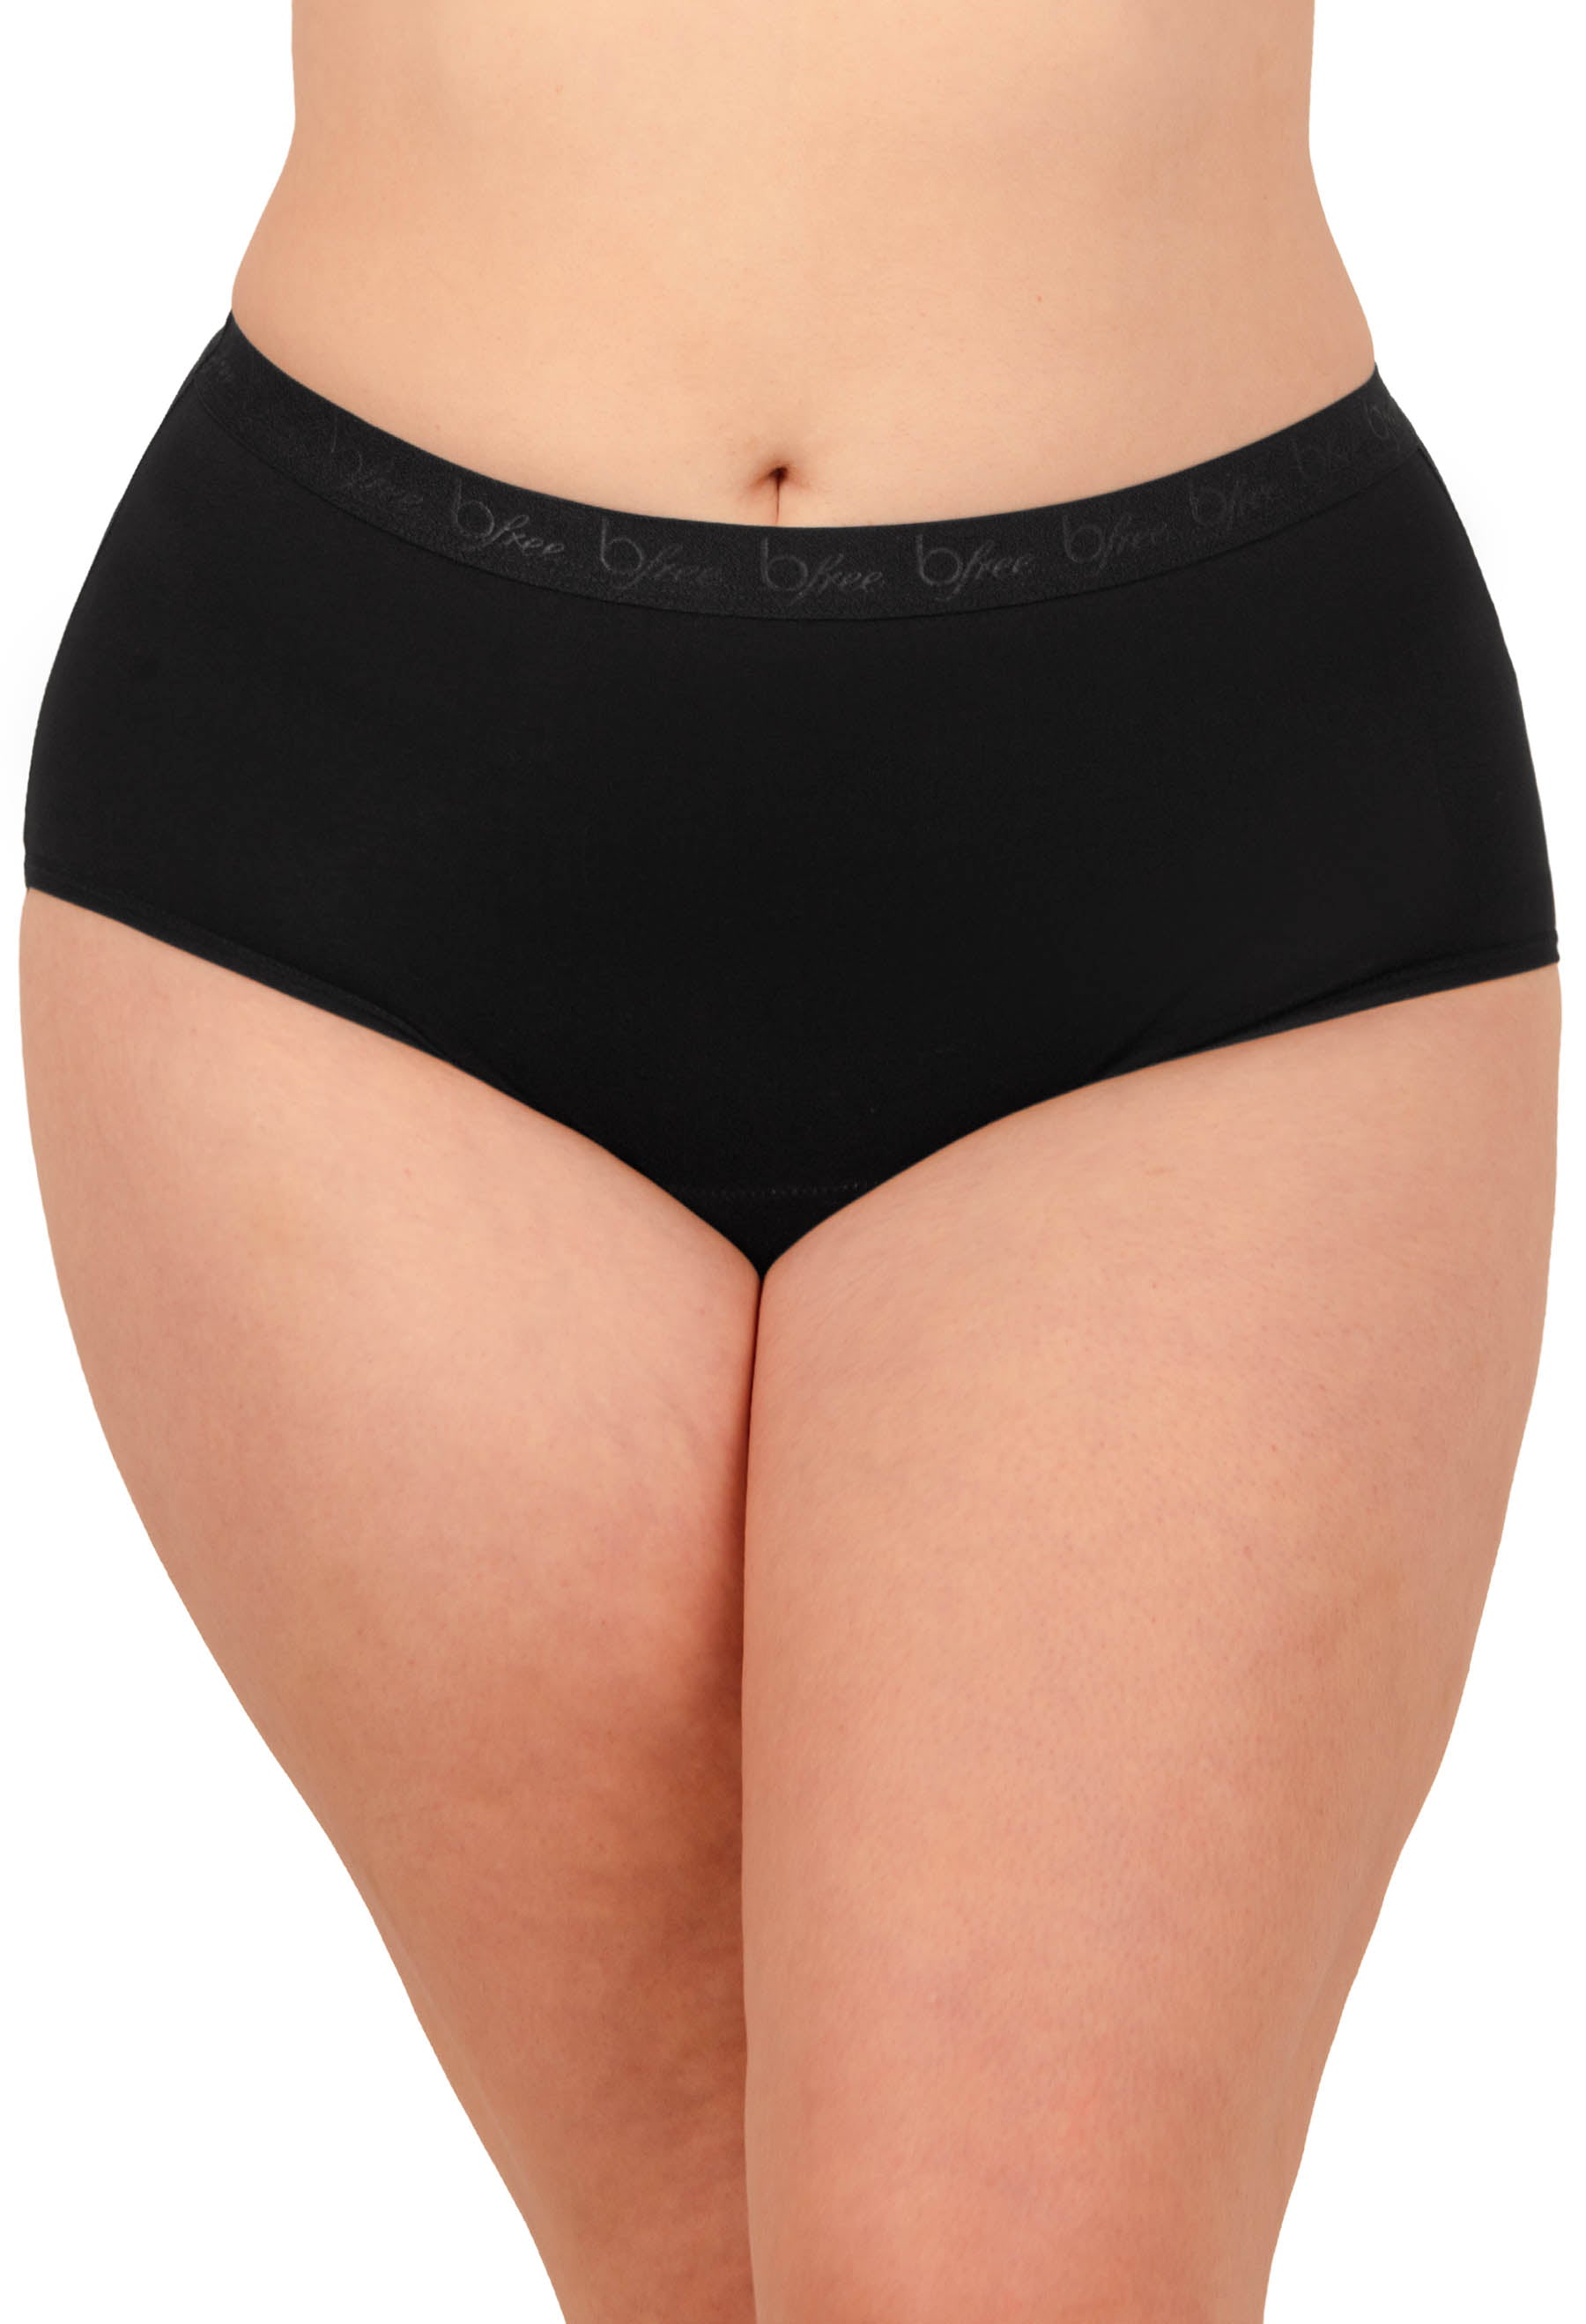 Leak Proof Underwear for Women T-Back Low-Rise Comfort Soft